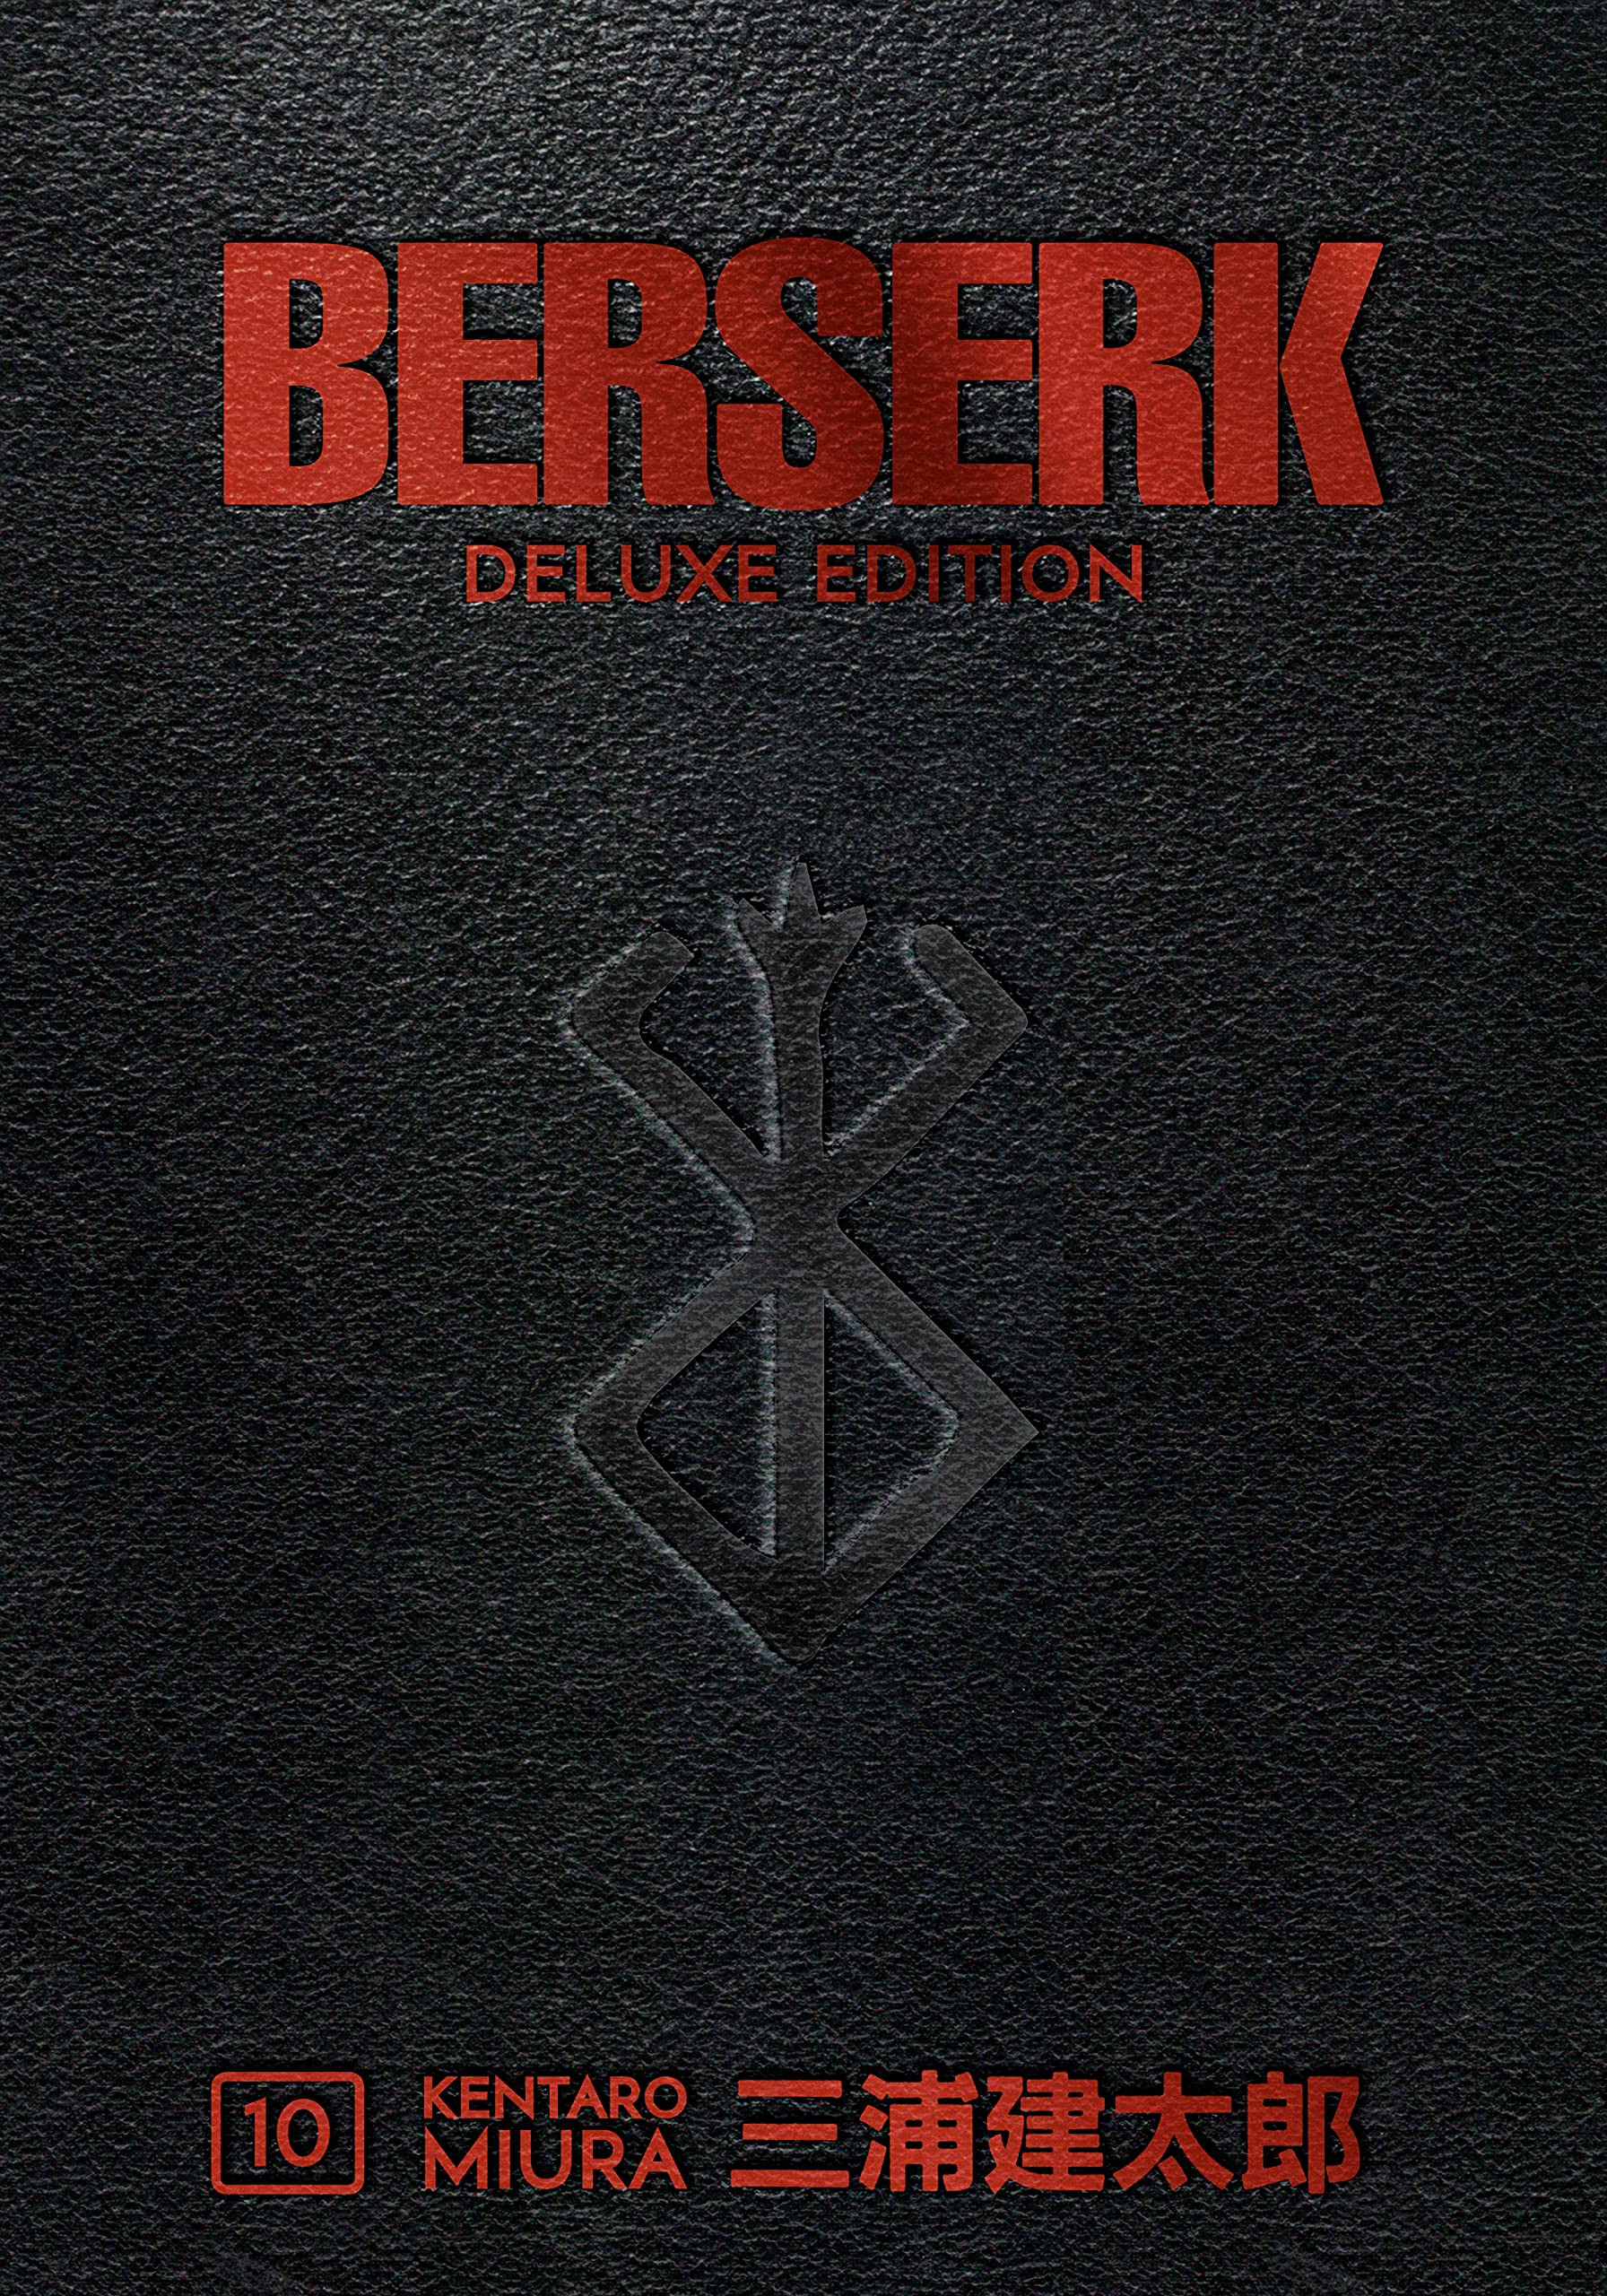 Berserk Deluxe 10